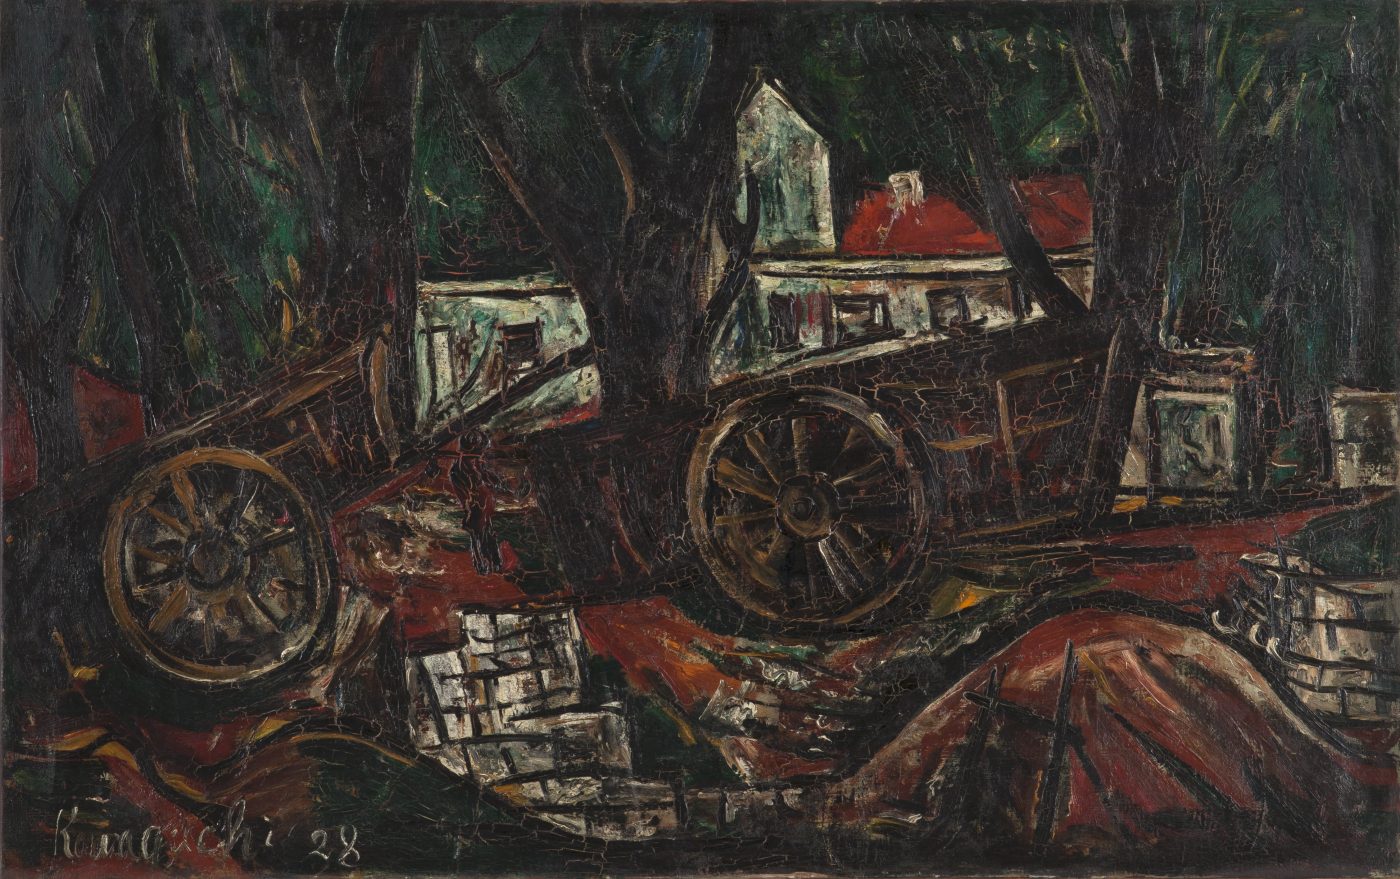 川口軌外《車のある風景》 1928 年 油彩、キャンバス